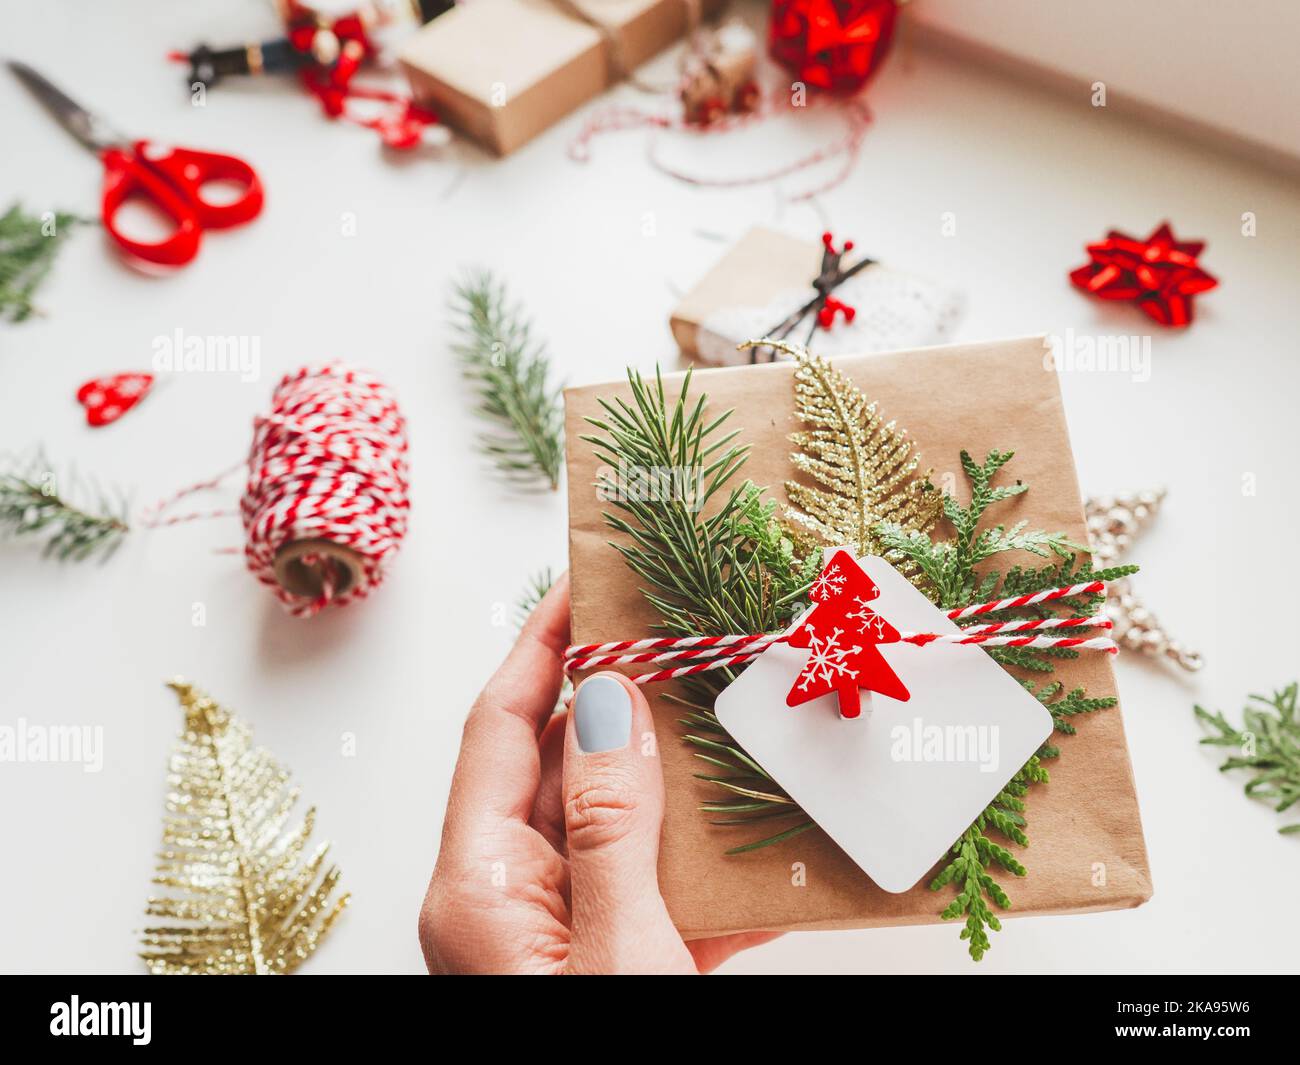 Regali fai da te avvolti in carta artigianale con rametti di abete e simbolo rosso dell'albero di Natale. Vista dall'alto sulle decorazioni dei regali di Capodanno. Festivo Foto Stock